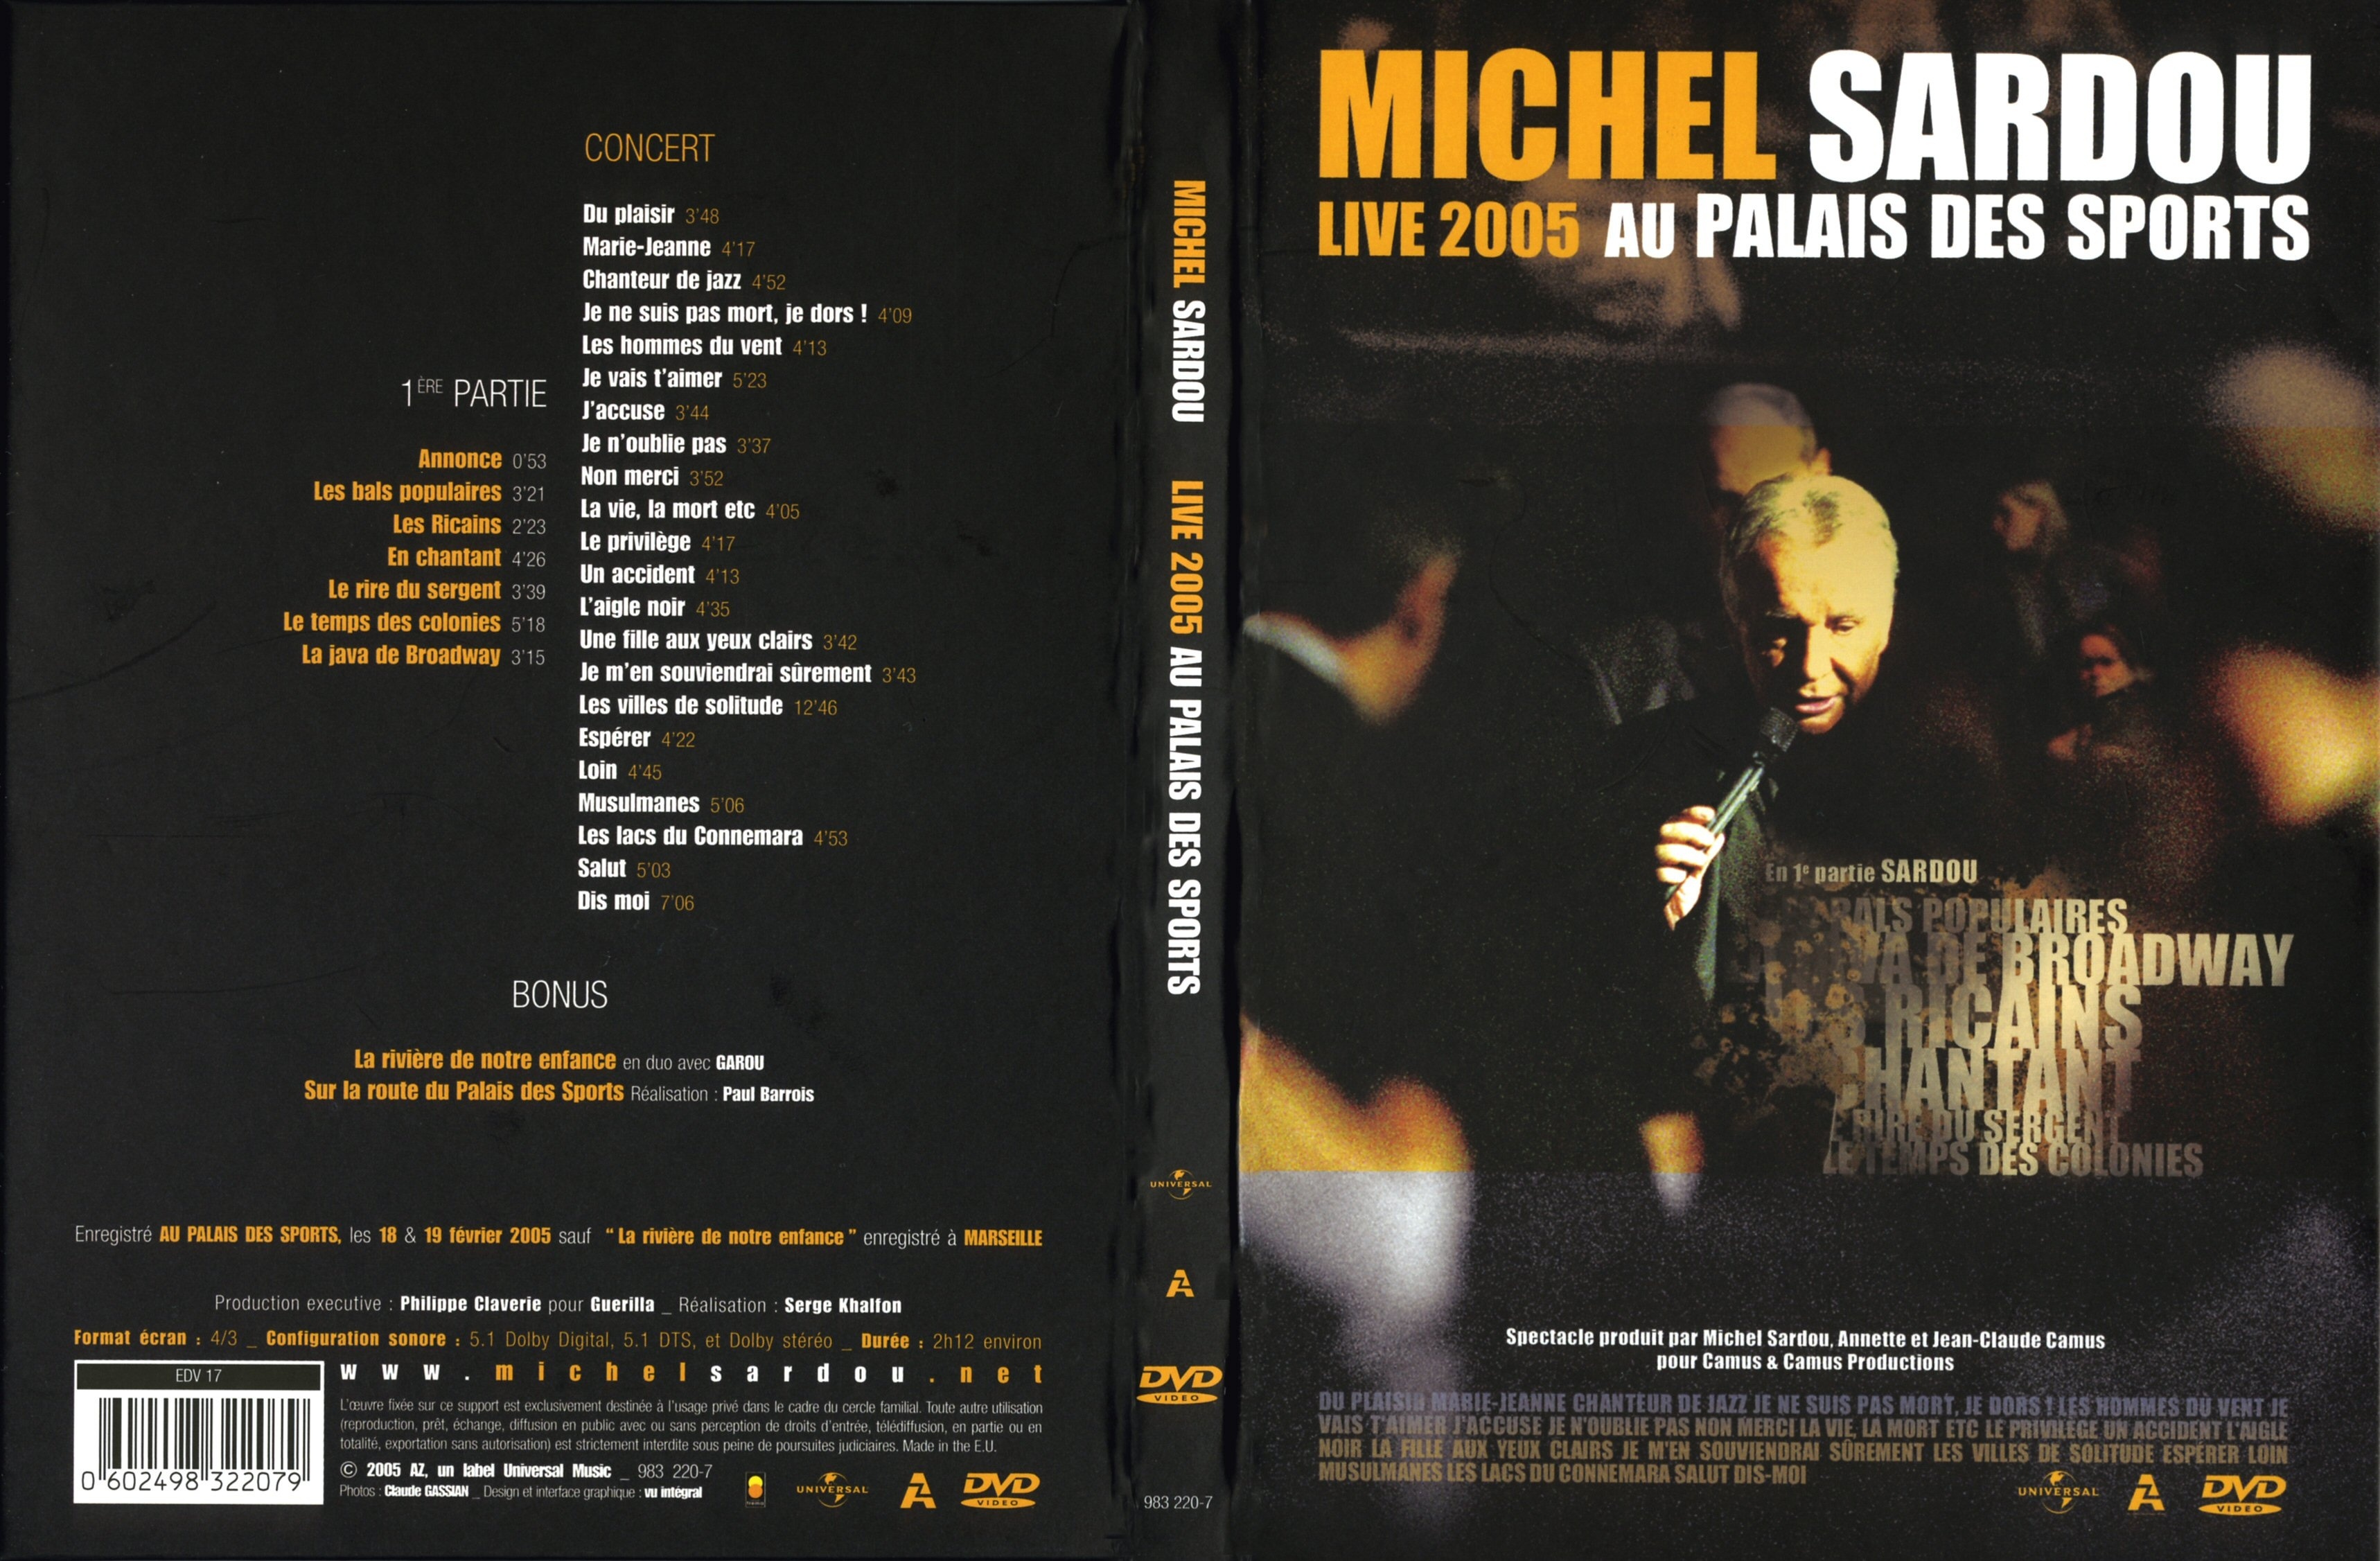 Jaquette DVD Michel Sardou Live 2005